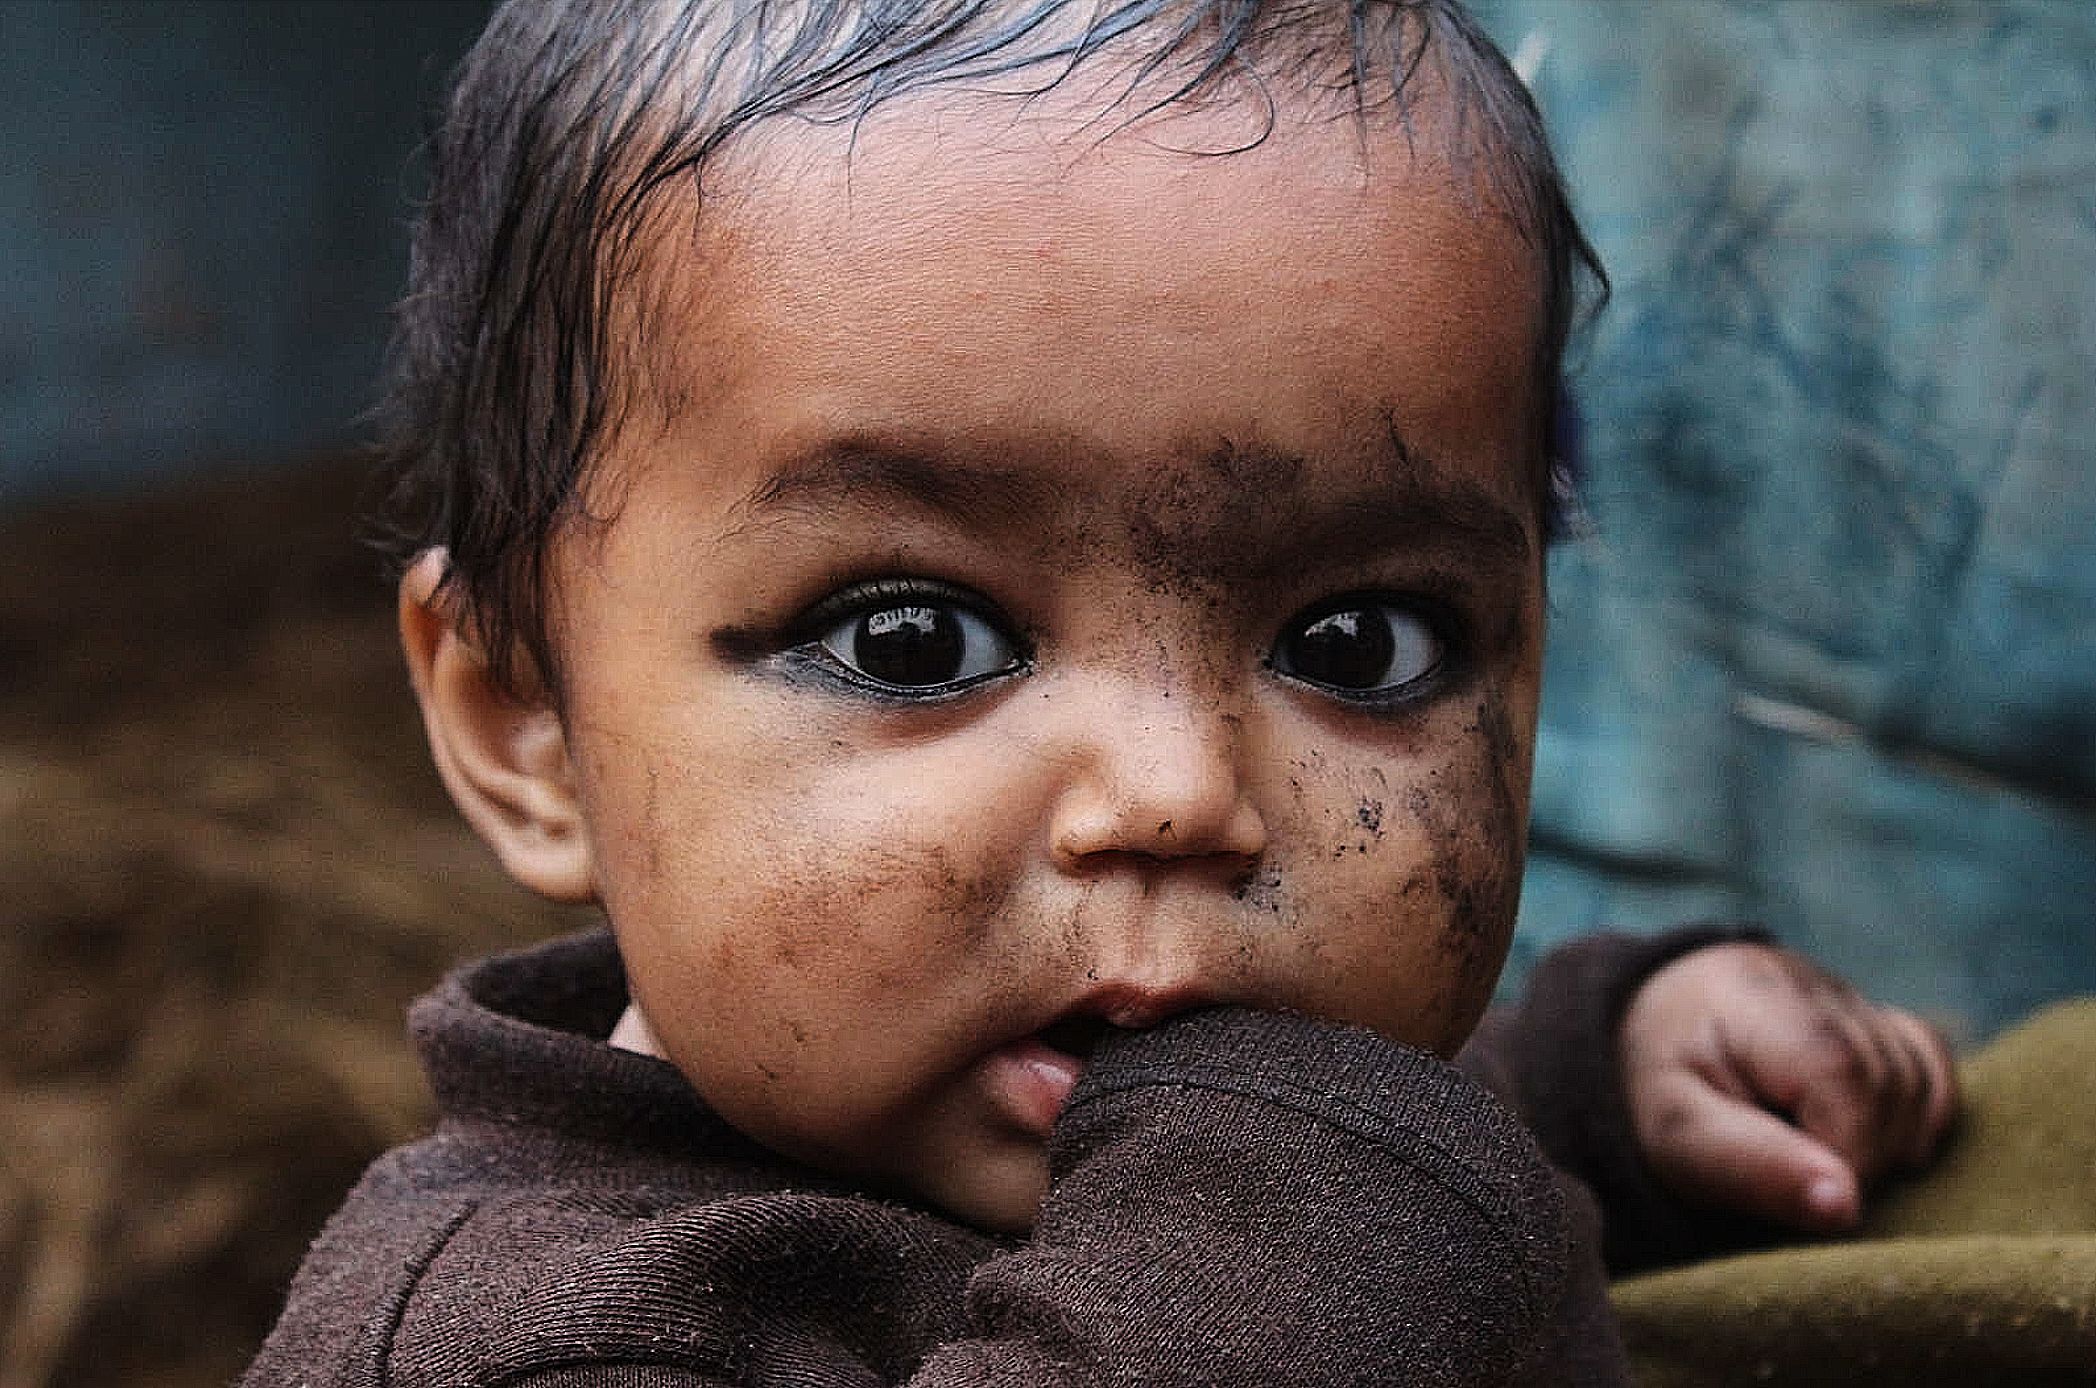 Las bebes de Bihar · Bihar, India #Lucinda Silkoff